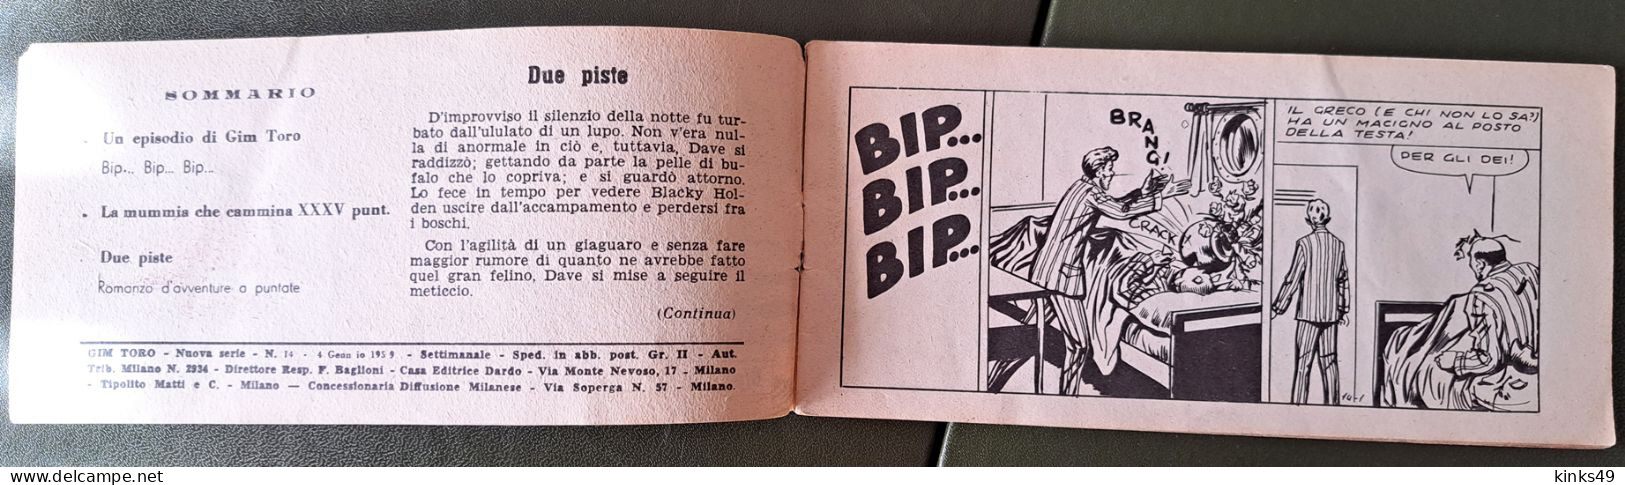 M228> GIM TORO "Bip... Bip... Bip..." Striscia DARDO N° 14 Del 4 GENNAIO 1959 - Primeras Ediciones